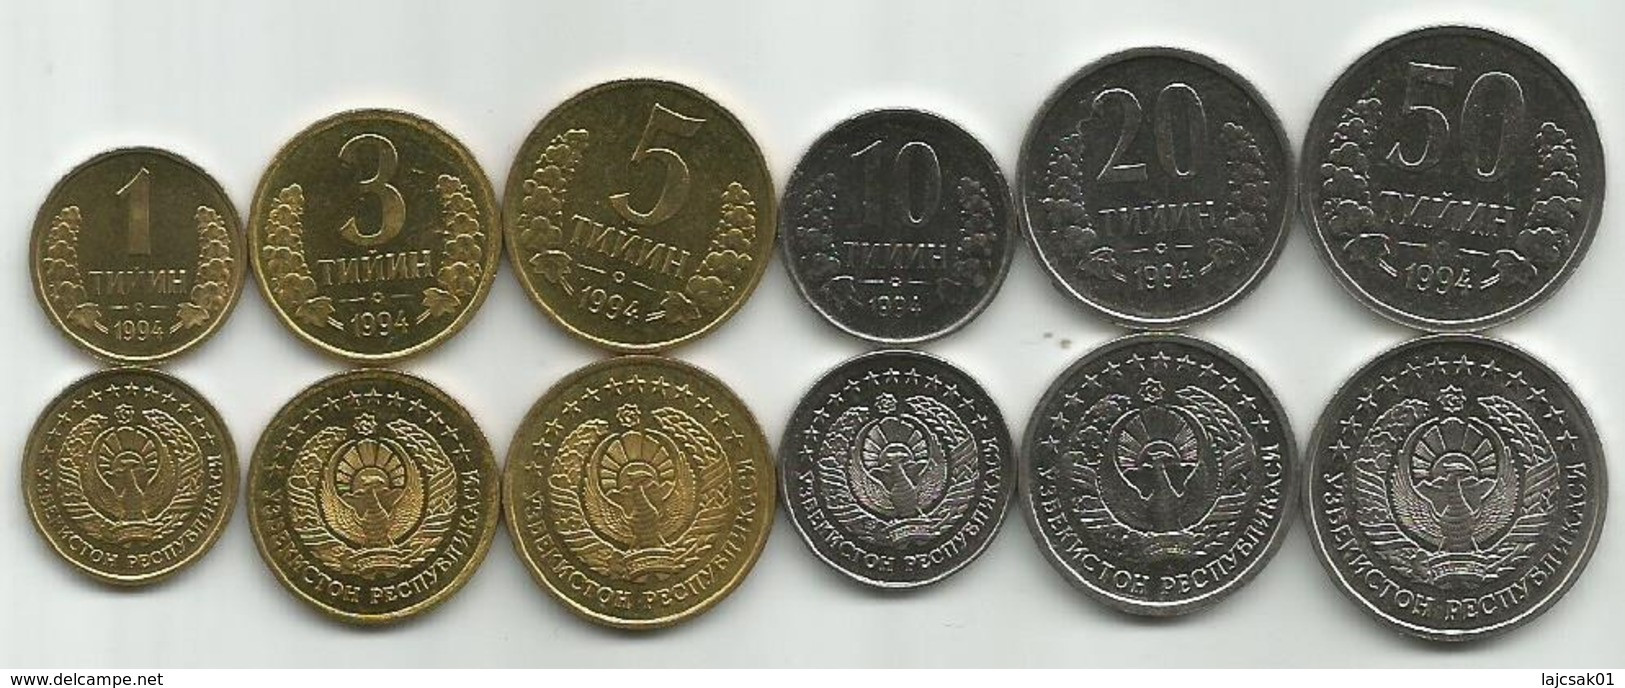 Uzbekistan 1994. Set Of 6 High Grade Coins 1-50 Tiyin - Ouzbékistan